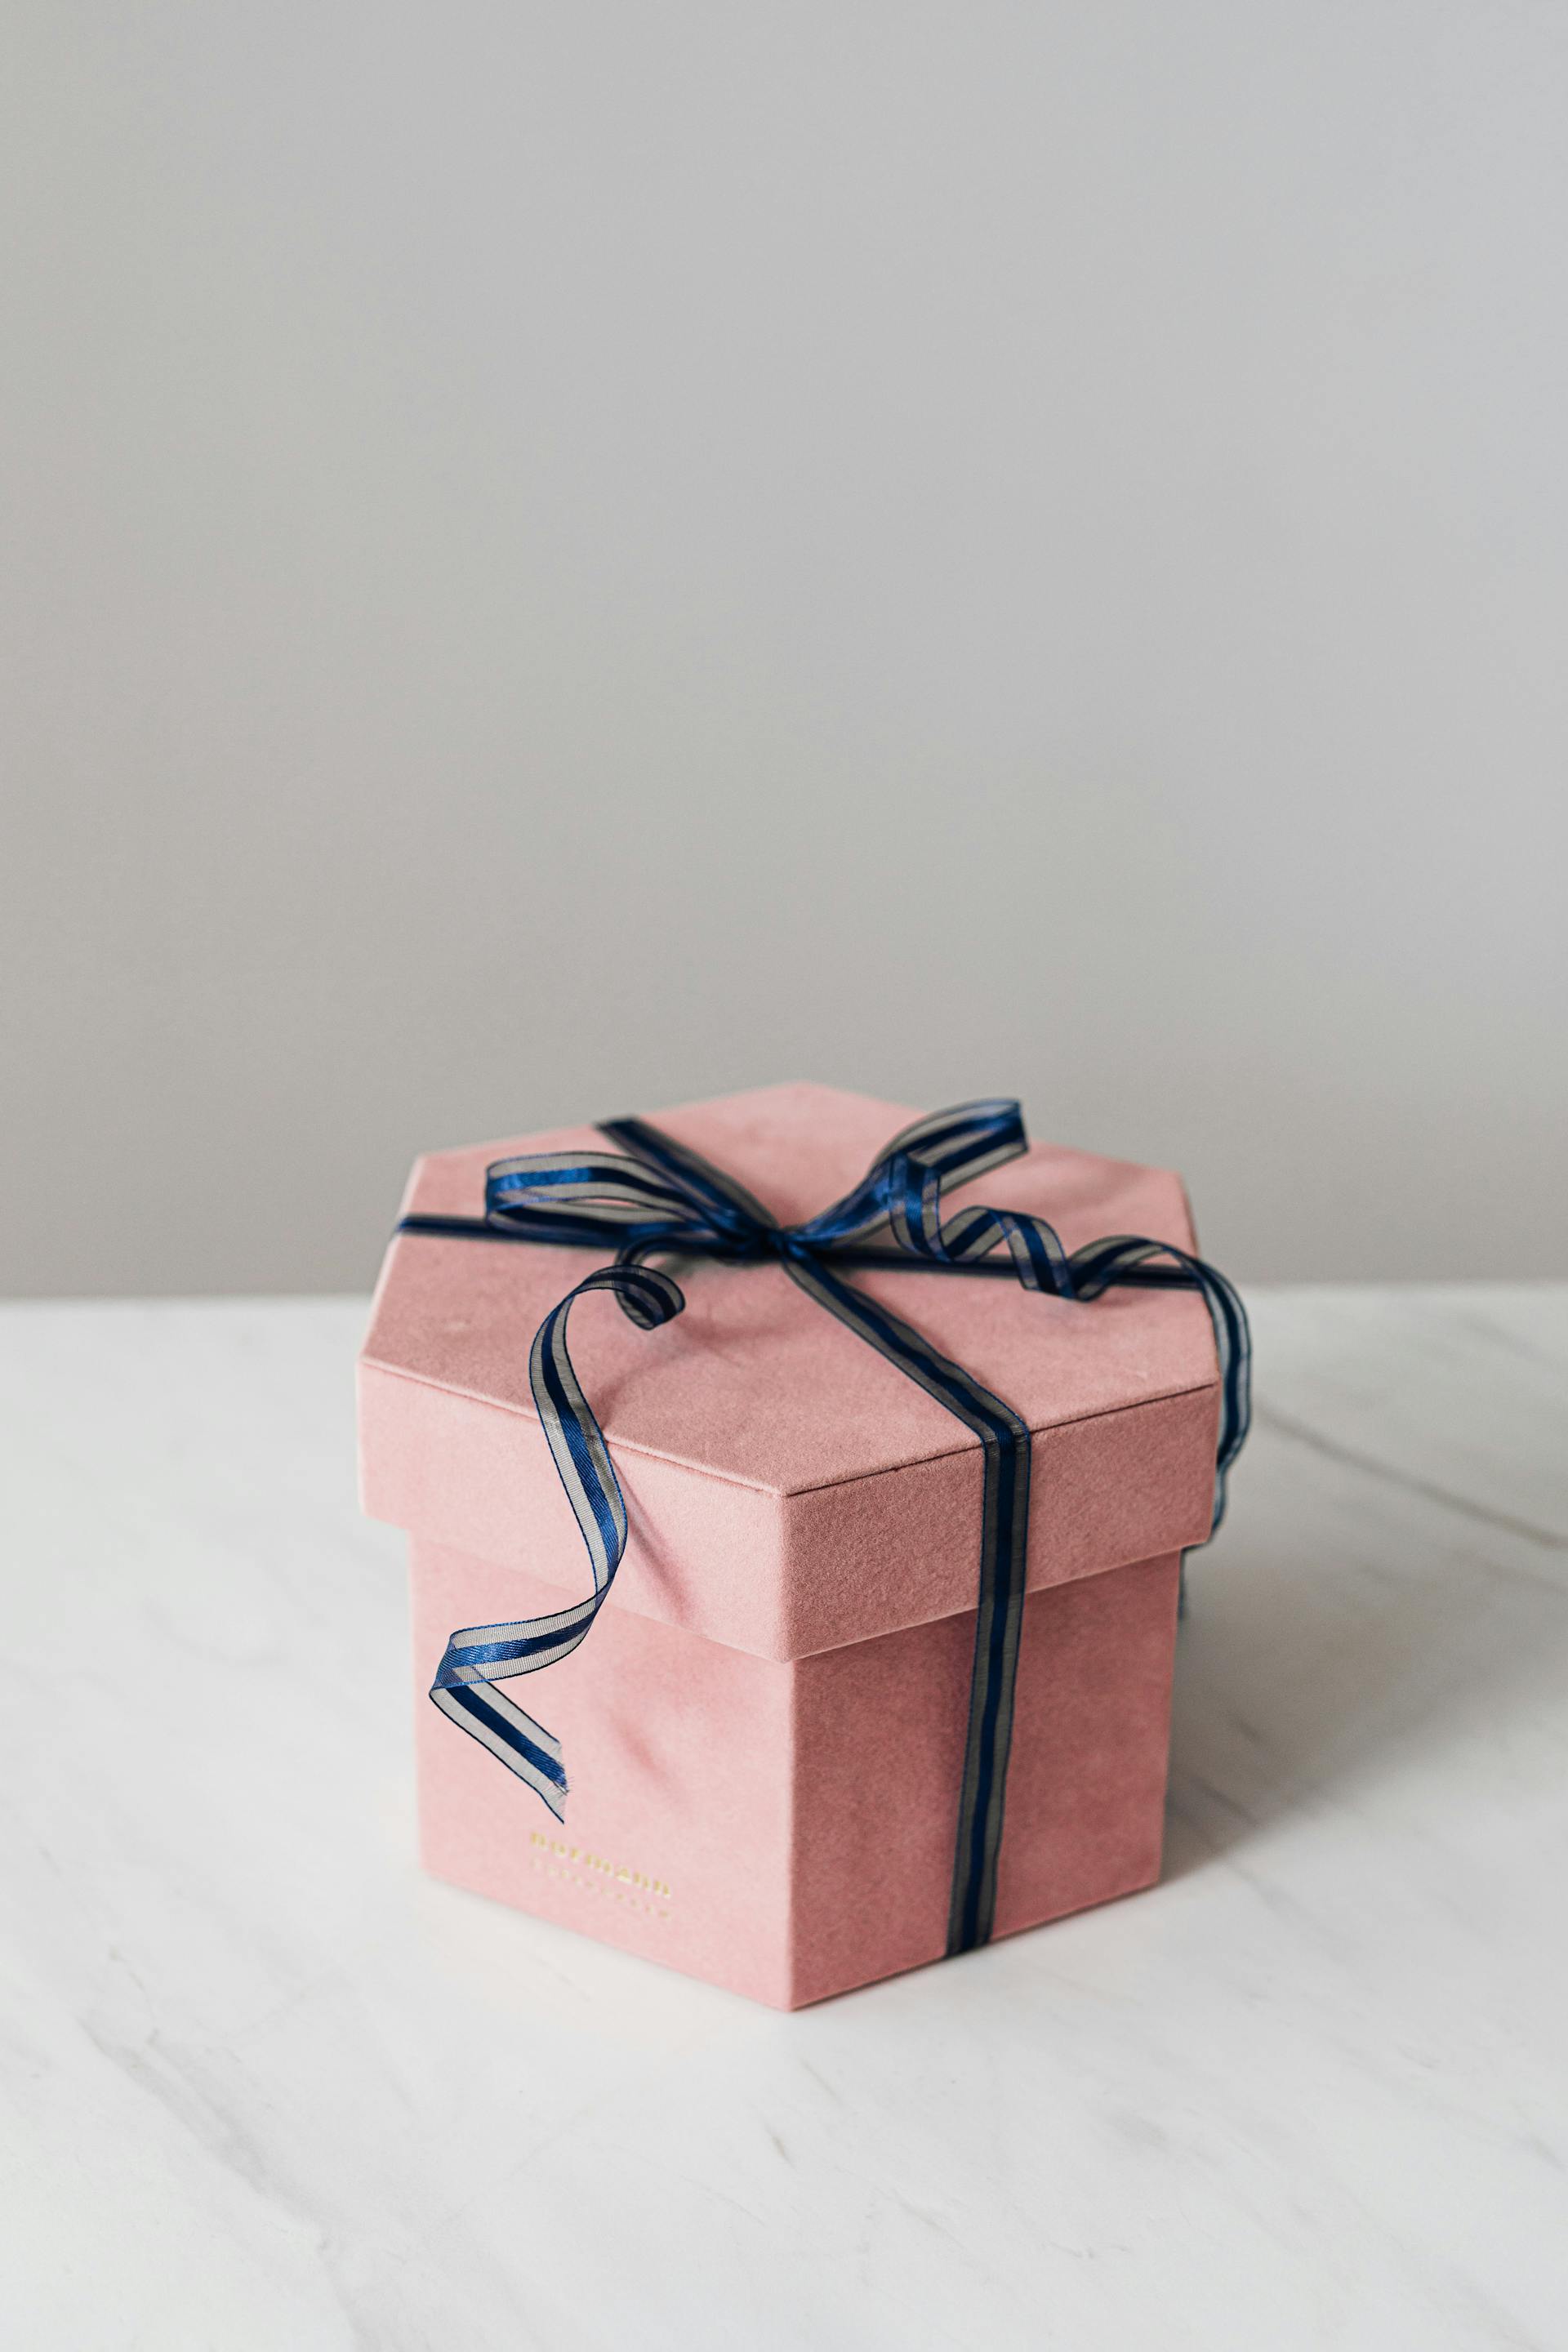 Eine Geschenkbox | Quelle: Pexels